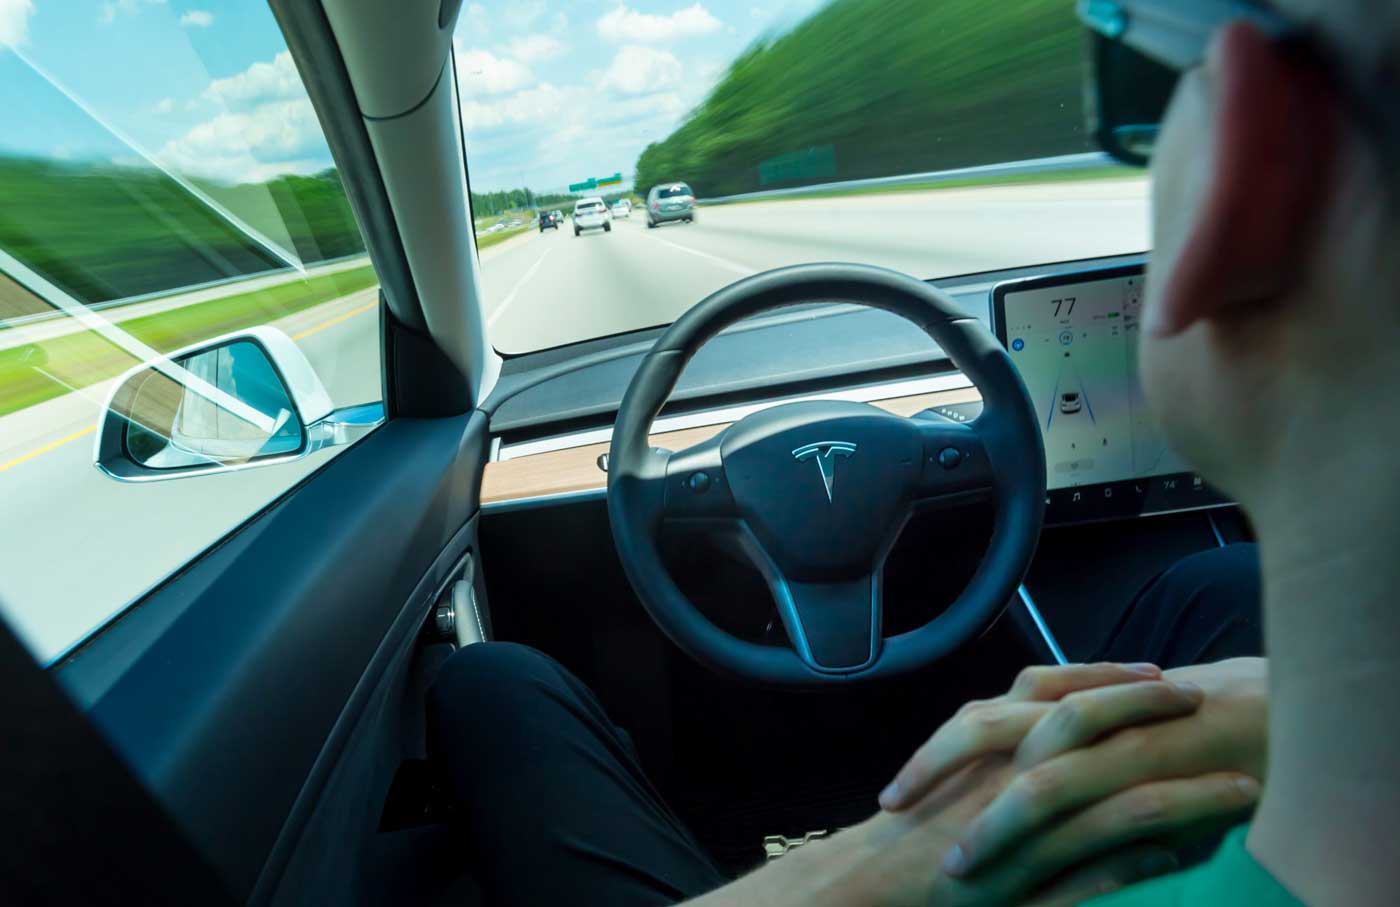 L’Autopilot Tesla réduirait l’attention des conducteurs